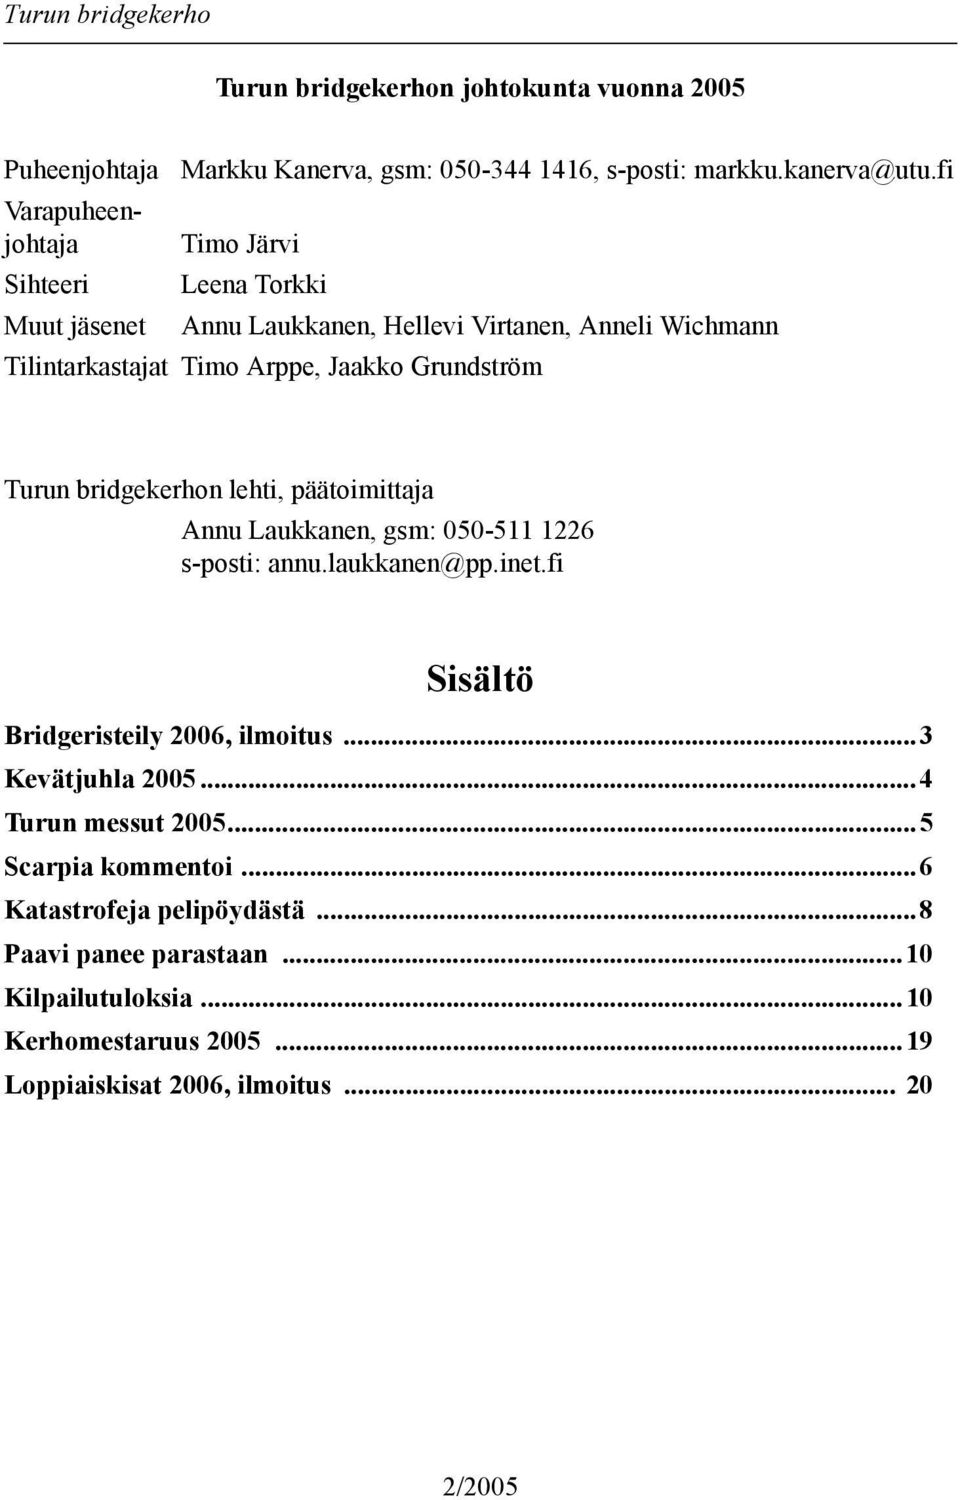 päätoimittaja Annu Laukkanen, gsm: 050-511 1226 s-posti: annu.laukkanen@pp.inet.fi Sisältö Bridgeristeily 2006, ilmoitus...3 Kevätjuhla 2005...4 Turun messut 2005.